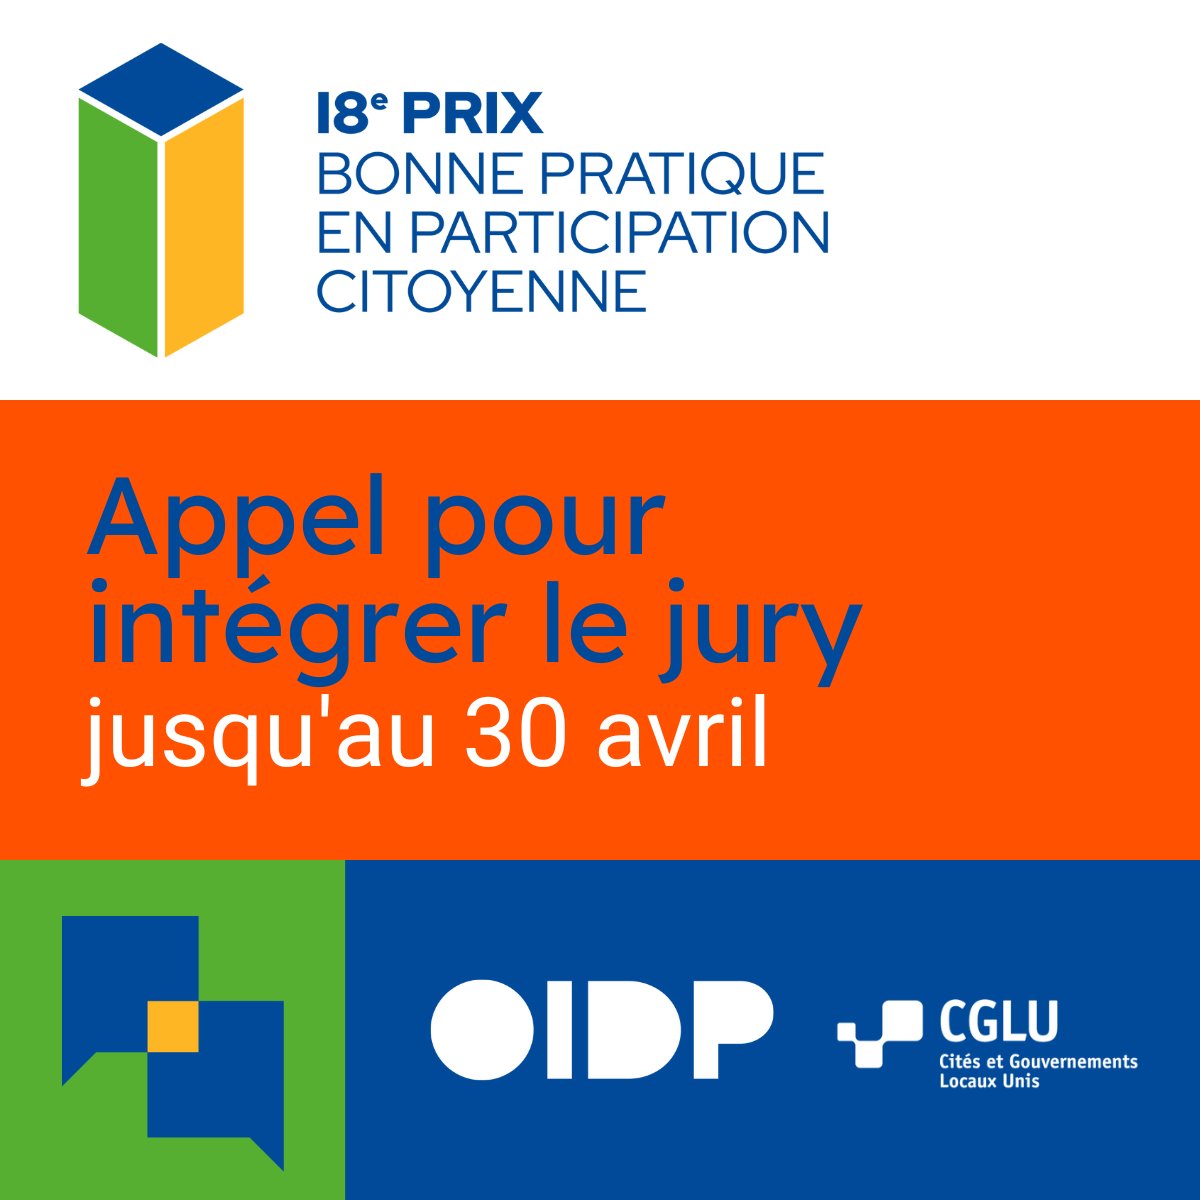 🌟Soyez membre du jury du 18ème Prix #OIDP ! Il suffit d'avoir : 🙋🏾 Un parcours reconnu en #démocratieparticipative. 🗣️🇬🇧 Un niveau d'anglais conversationnel ⏰Date limite d'expression d'intérêt : 30 avril. 🔗oidp.net/fr/publication…